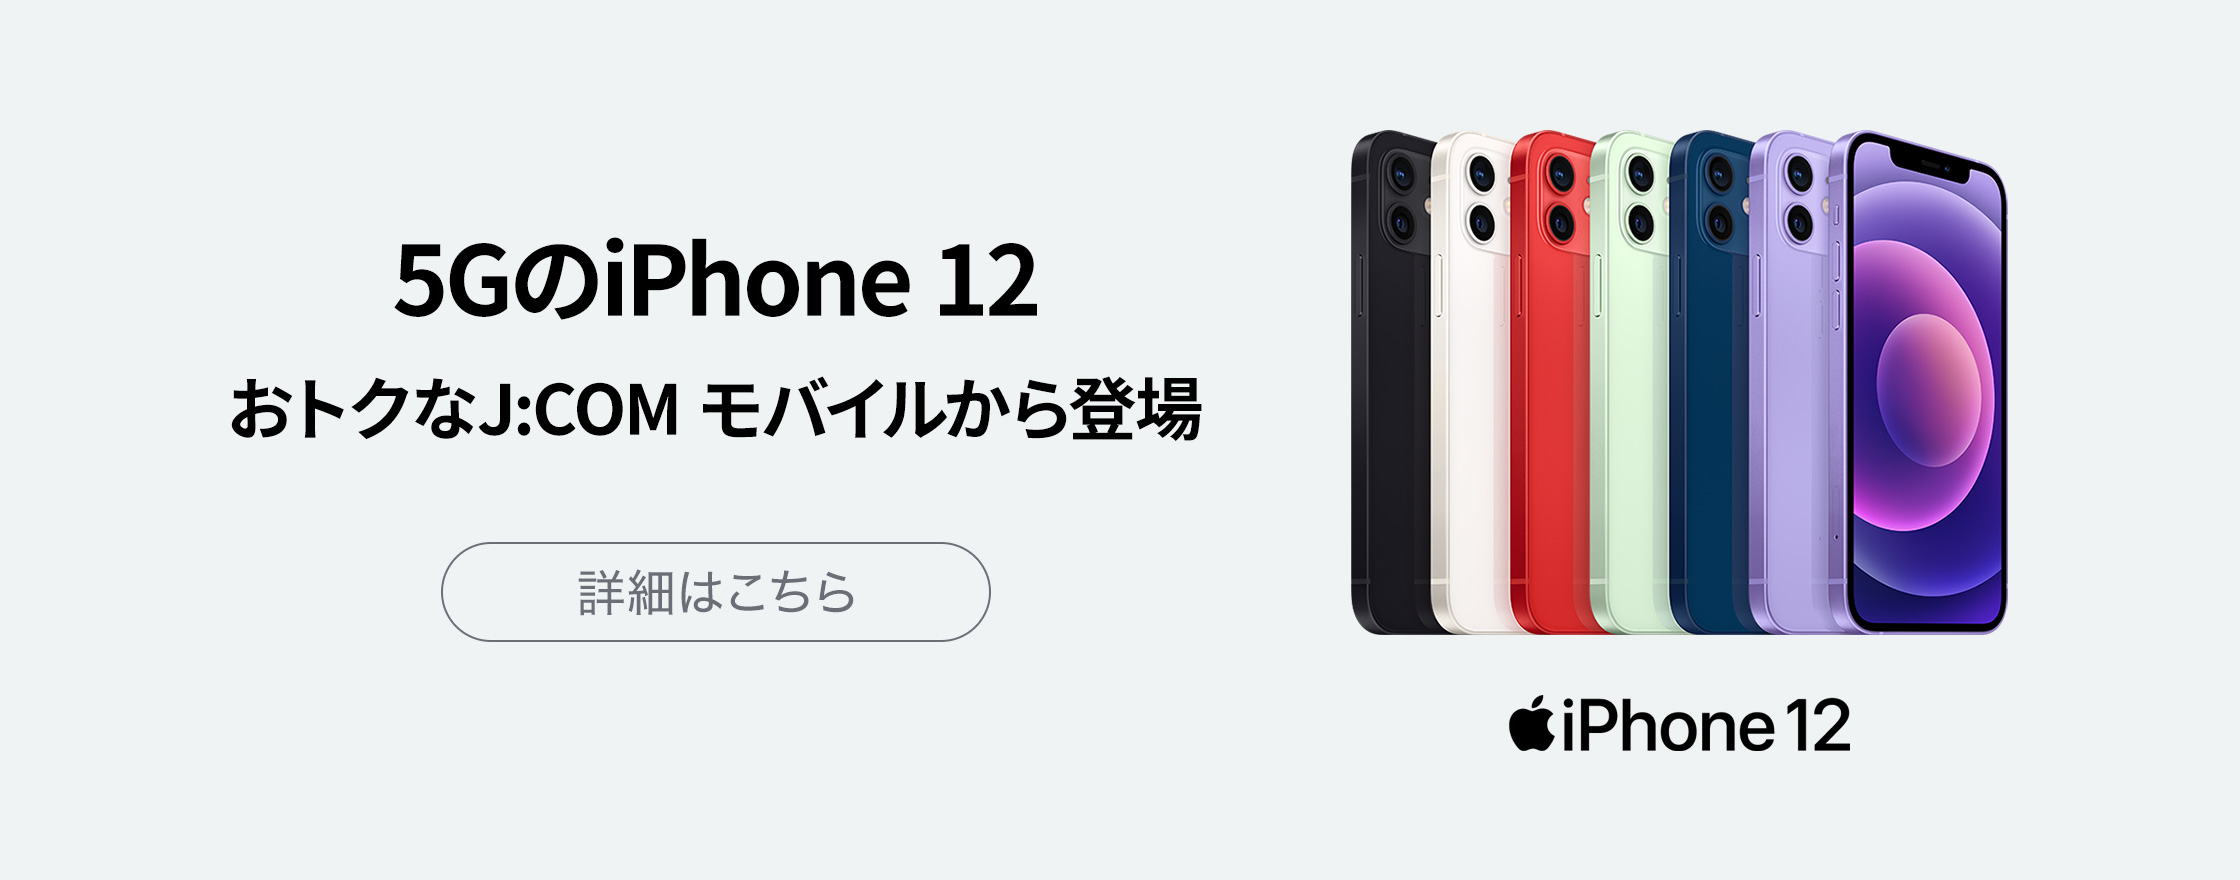 5GのiPhone 12 おトクなJ:COM モバイルから登場